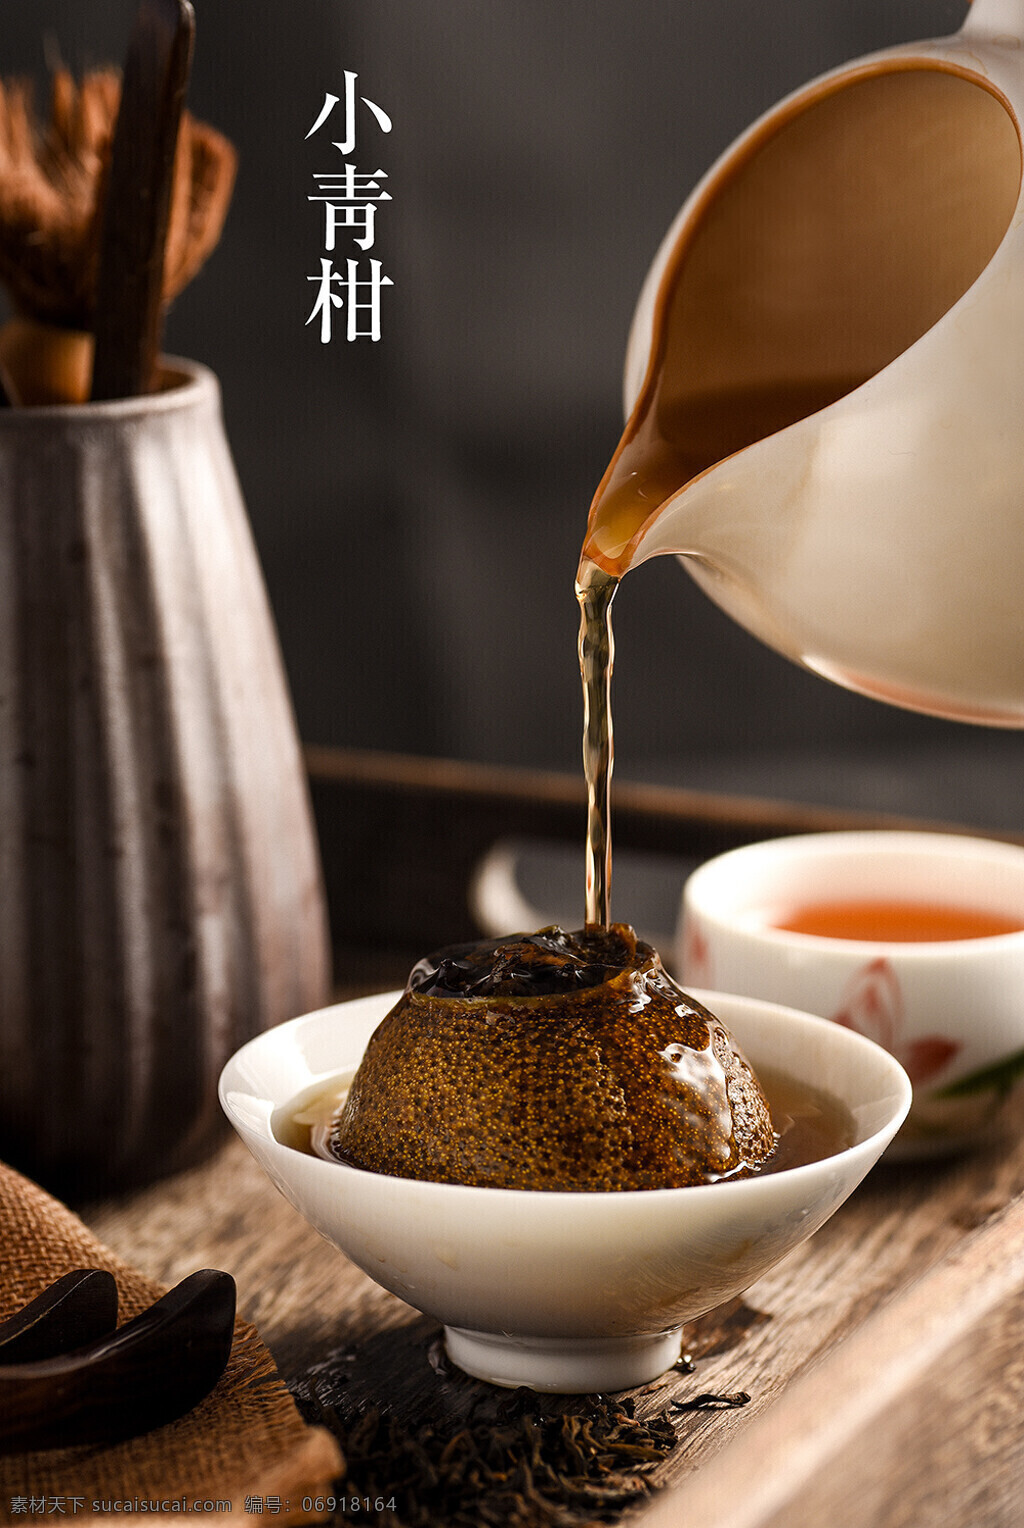 小青柑 传统 茶水 茶叶 清香 餐饮美食 饮料酒水